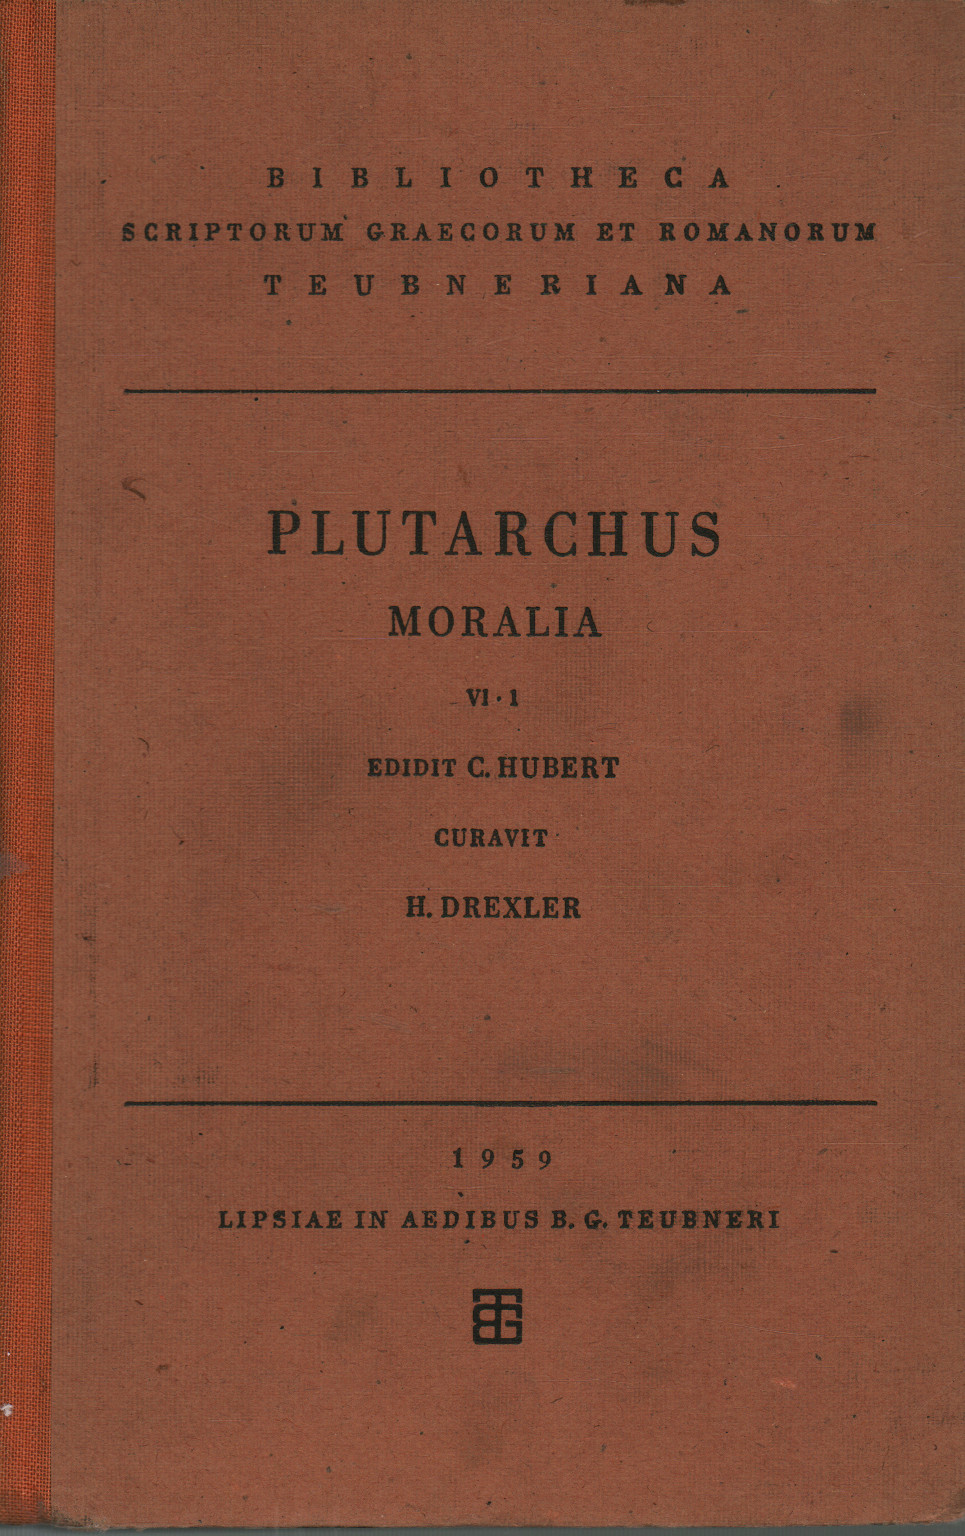 Moralia (vol. VI fasc. 1), Plutarco